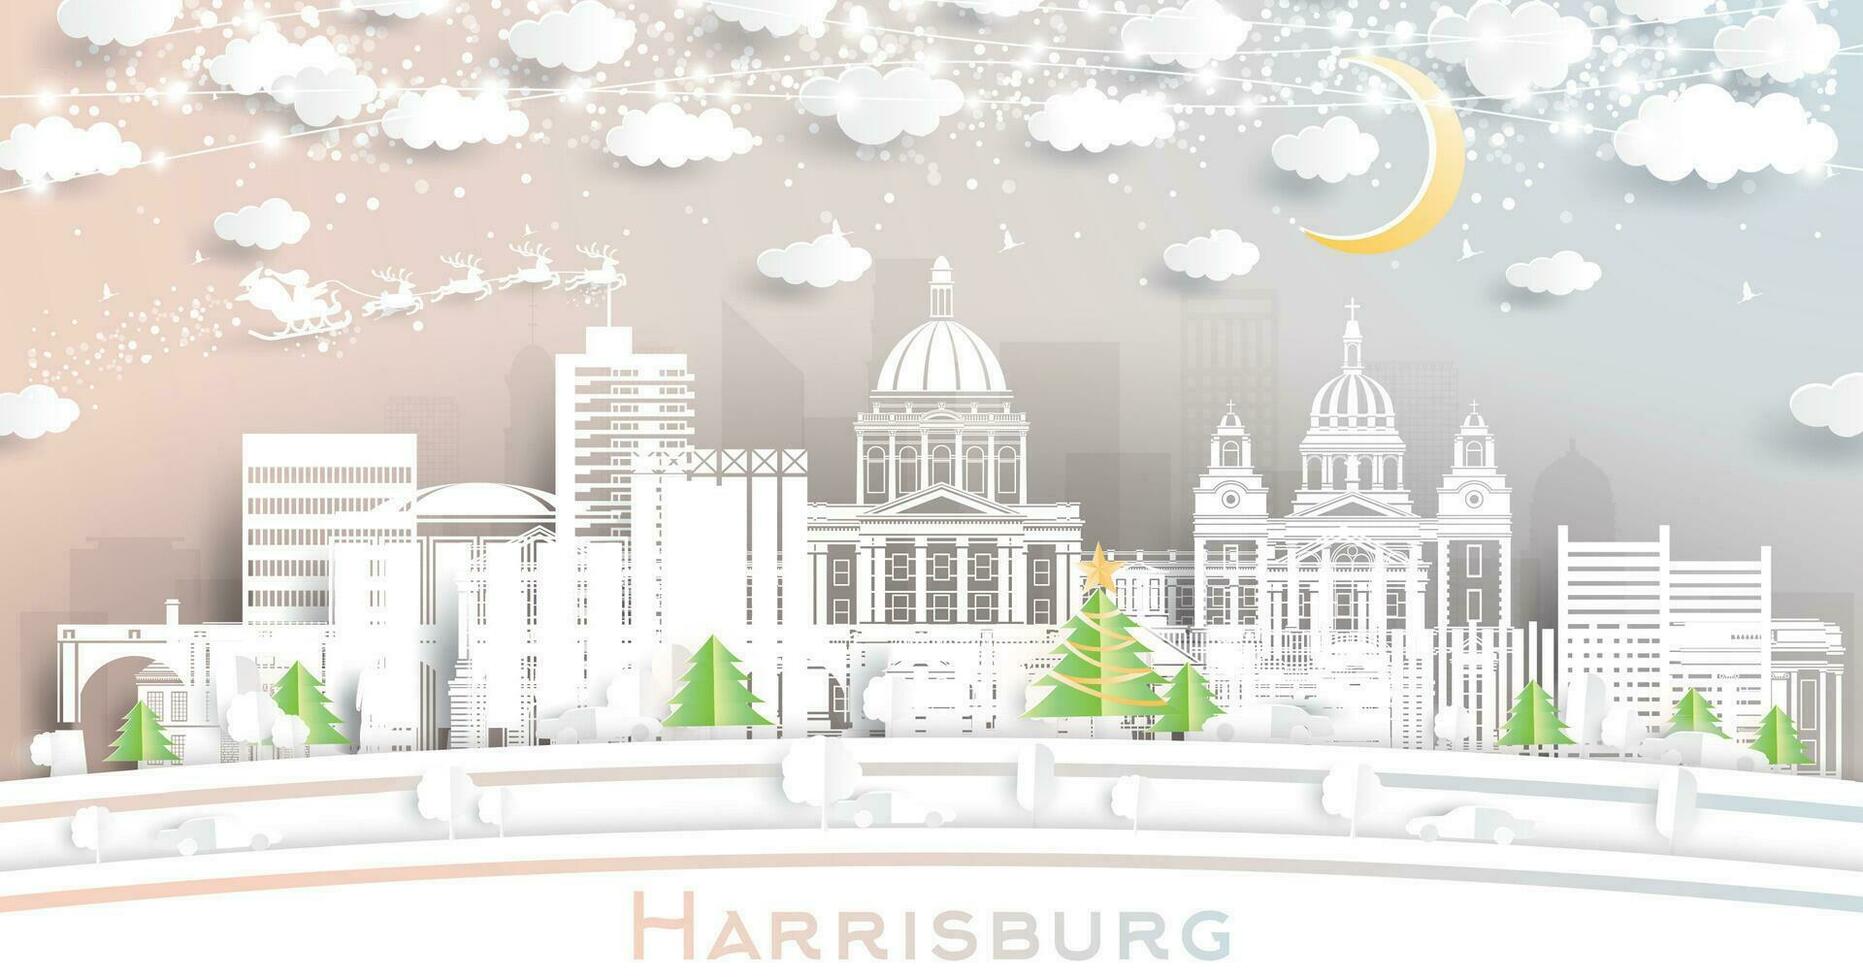 Harrisburg Pensilvania EE.UU. invierno ciudad horizonte en papel cortar estilo con copos de nieve, Luna y neón guirnalda. Navidad, nuevo año concepto. Papa Noel noel Harrisburg paisaje urbano con puntos de referencia vector